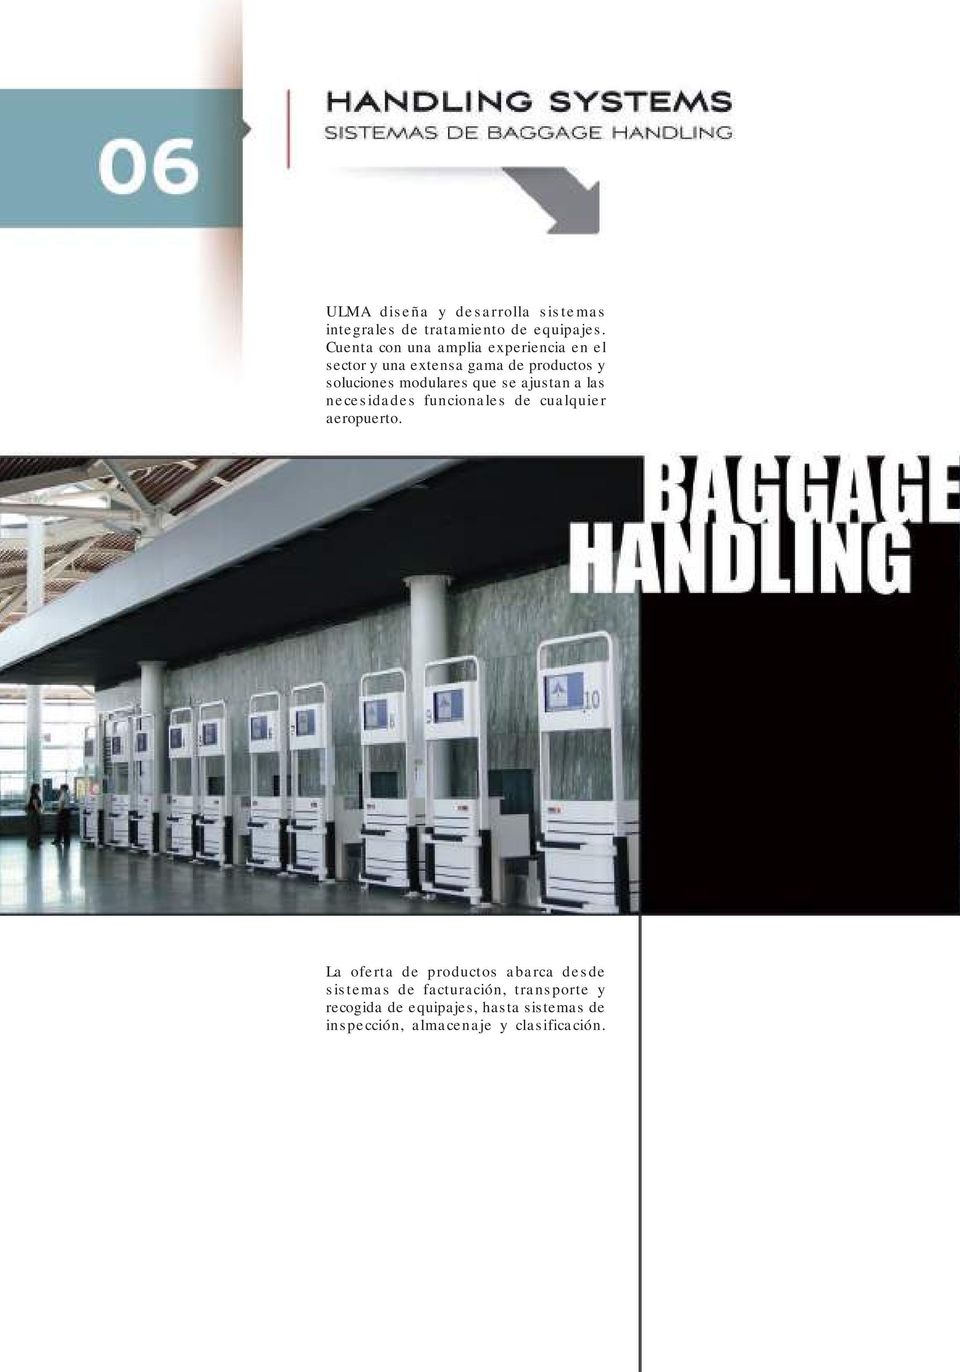 modulares que se ajustan a las necesidades funcionales de cualquier aeropuerto.